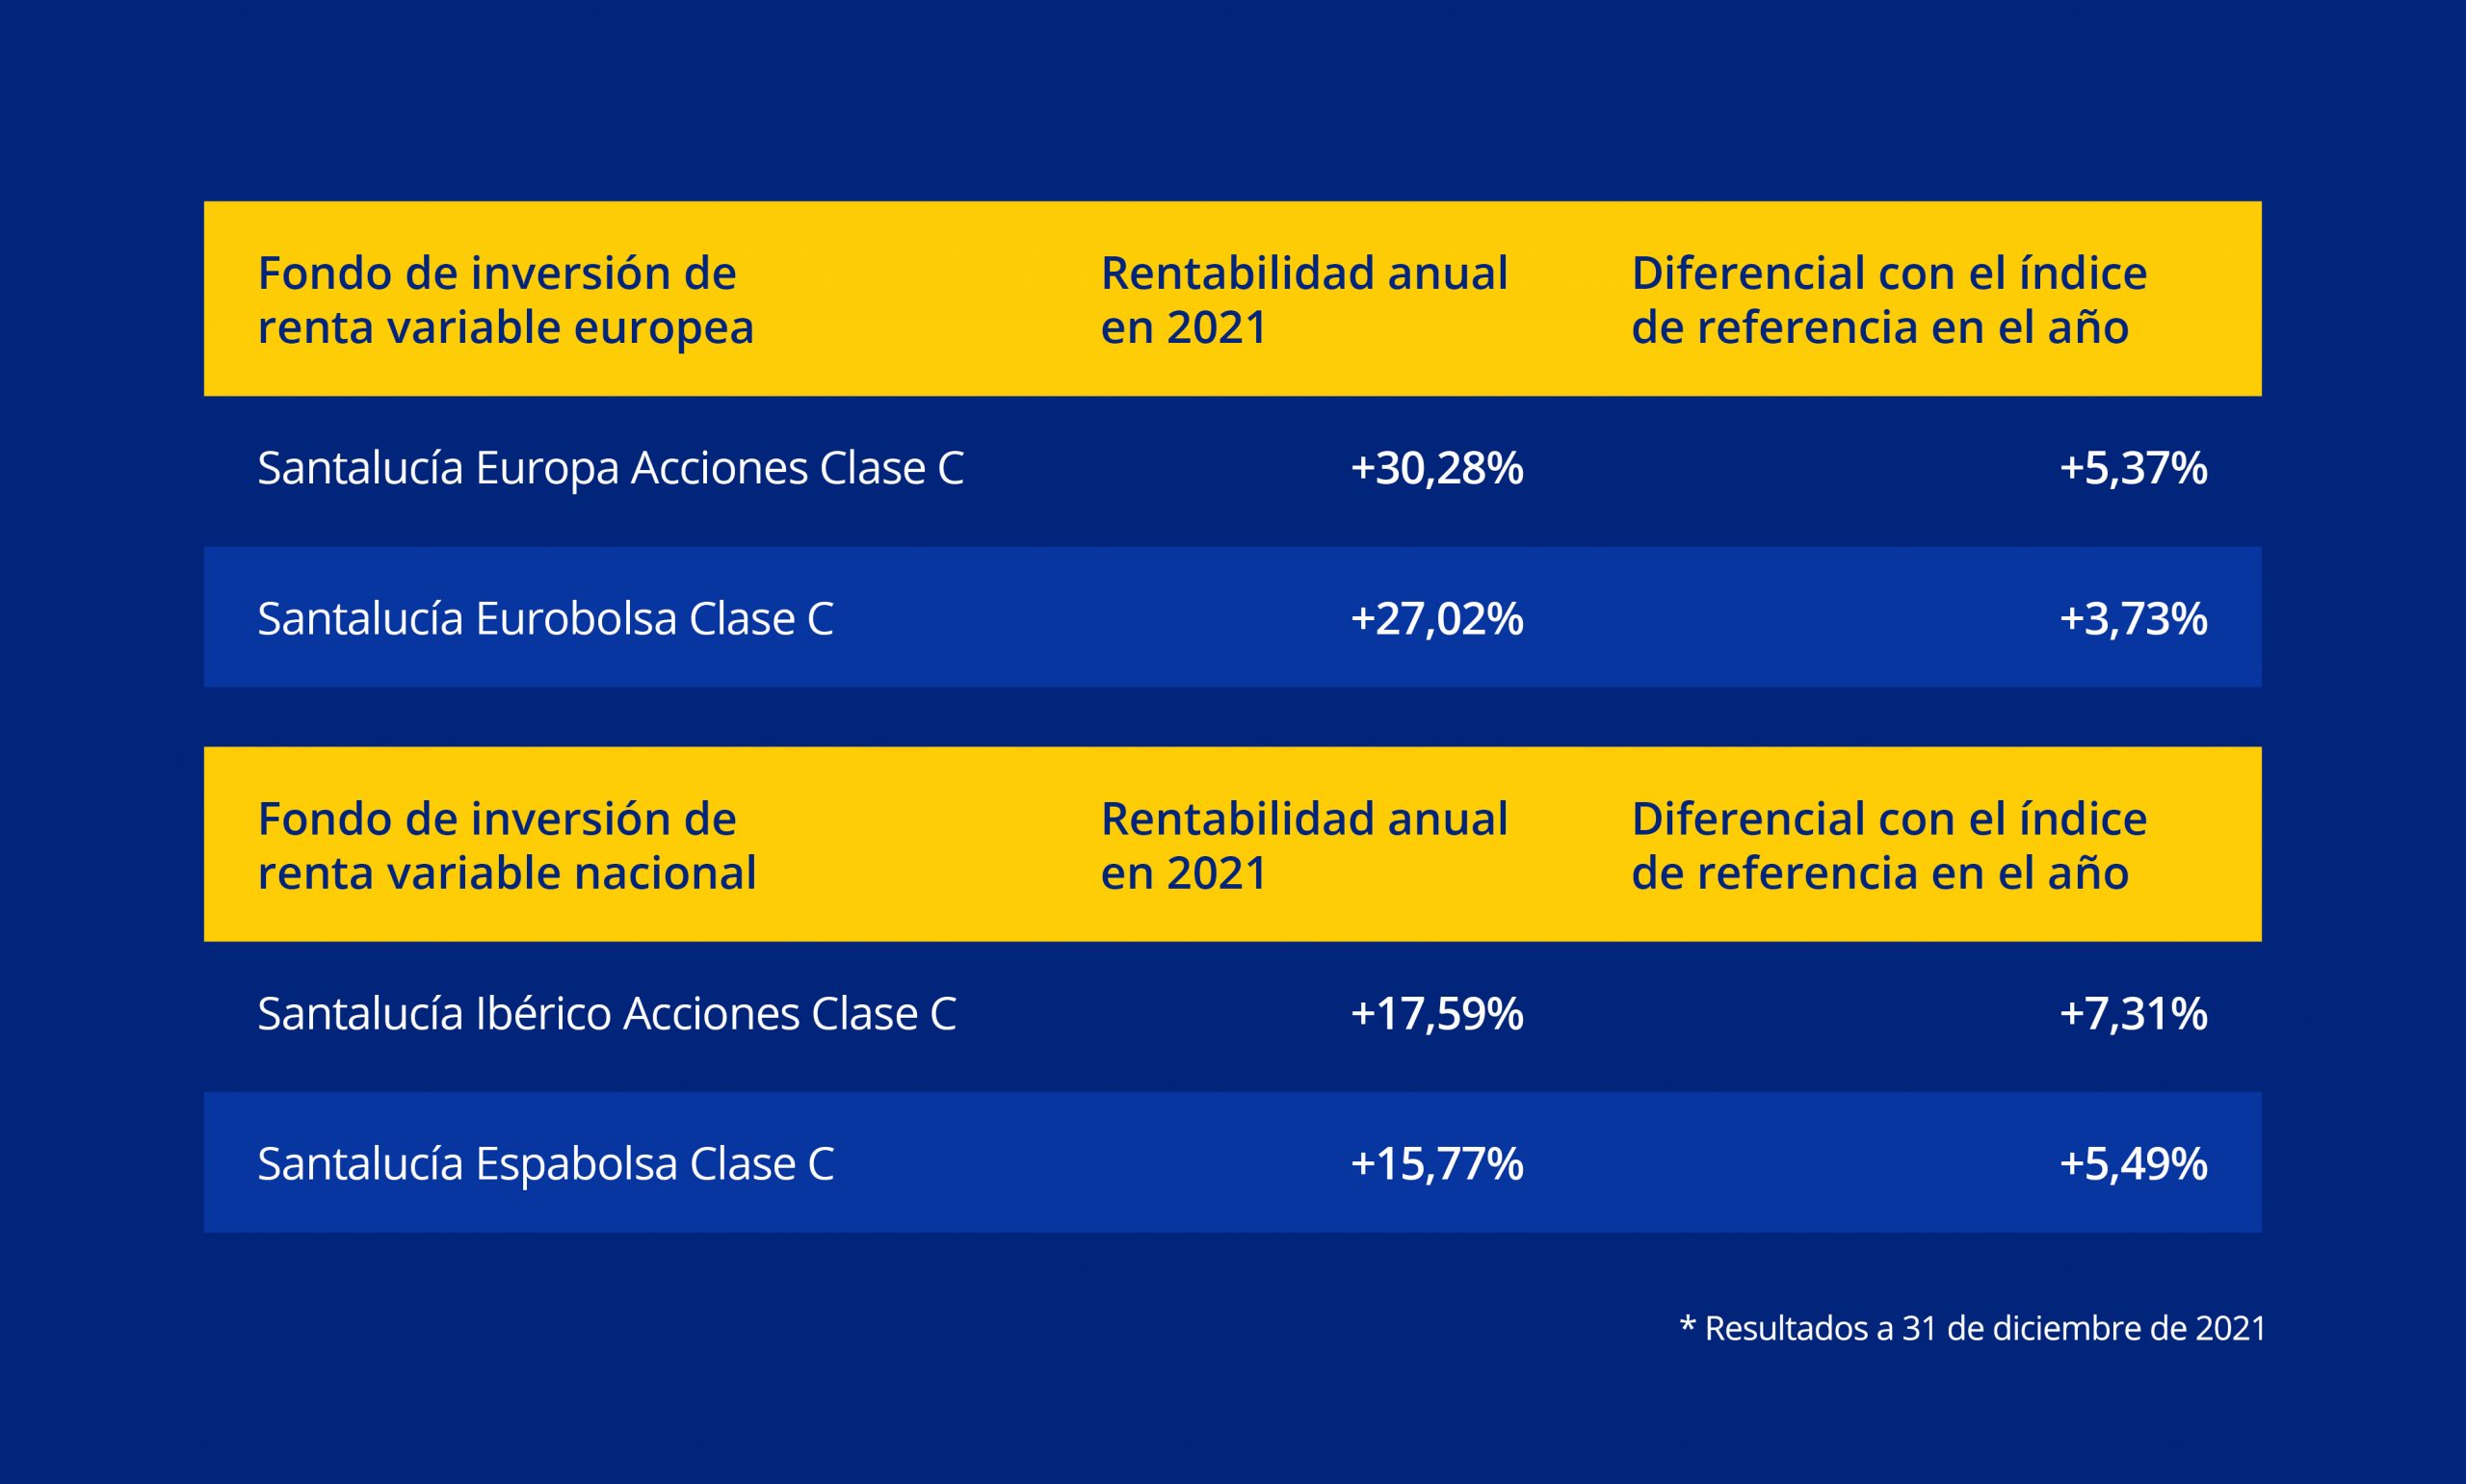 La rentabilidad de nuestros fondos de inversión de renta variable europea superó el 27% en 2021